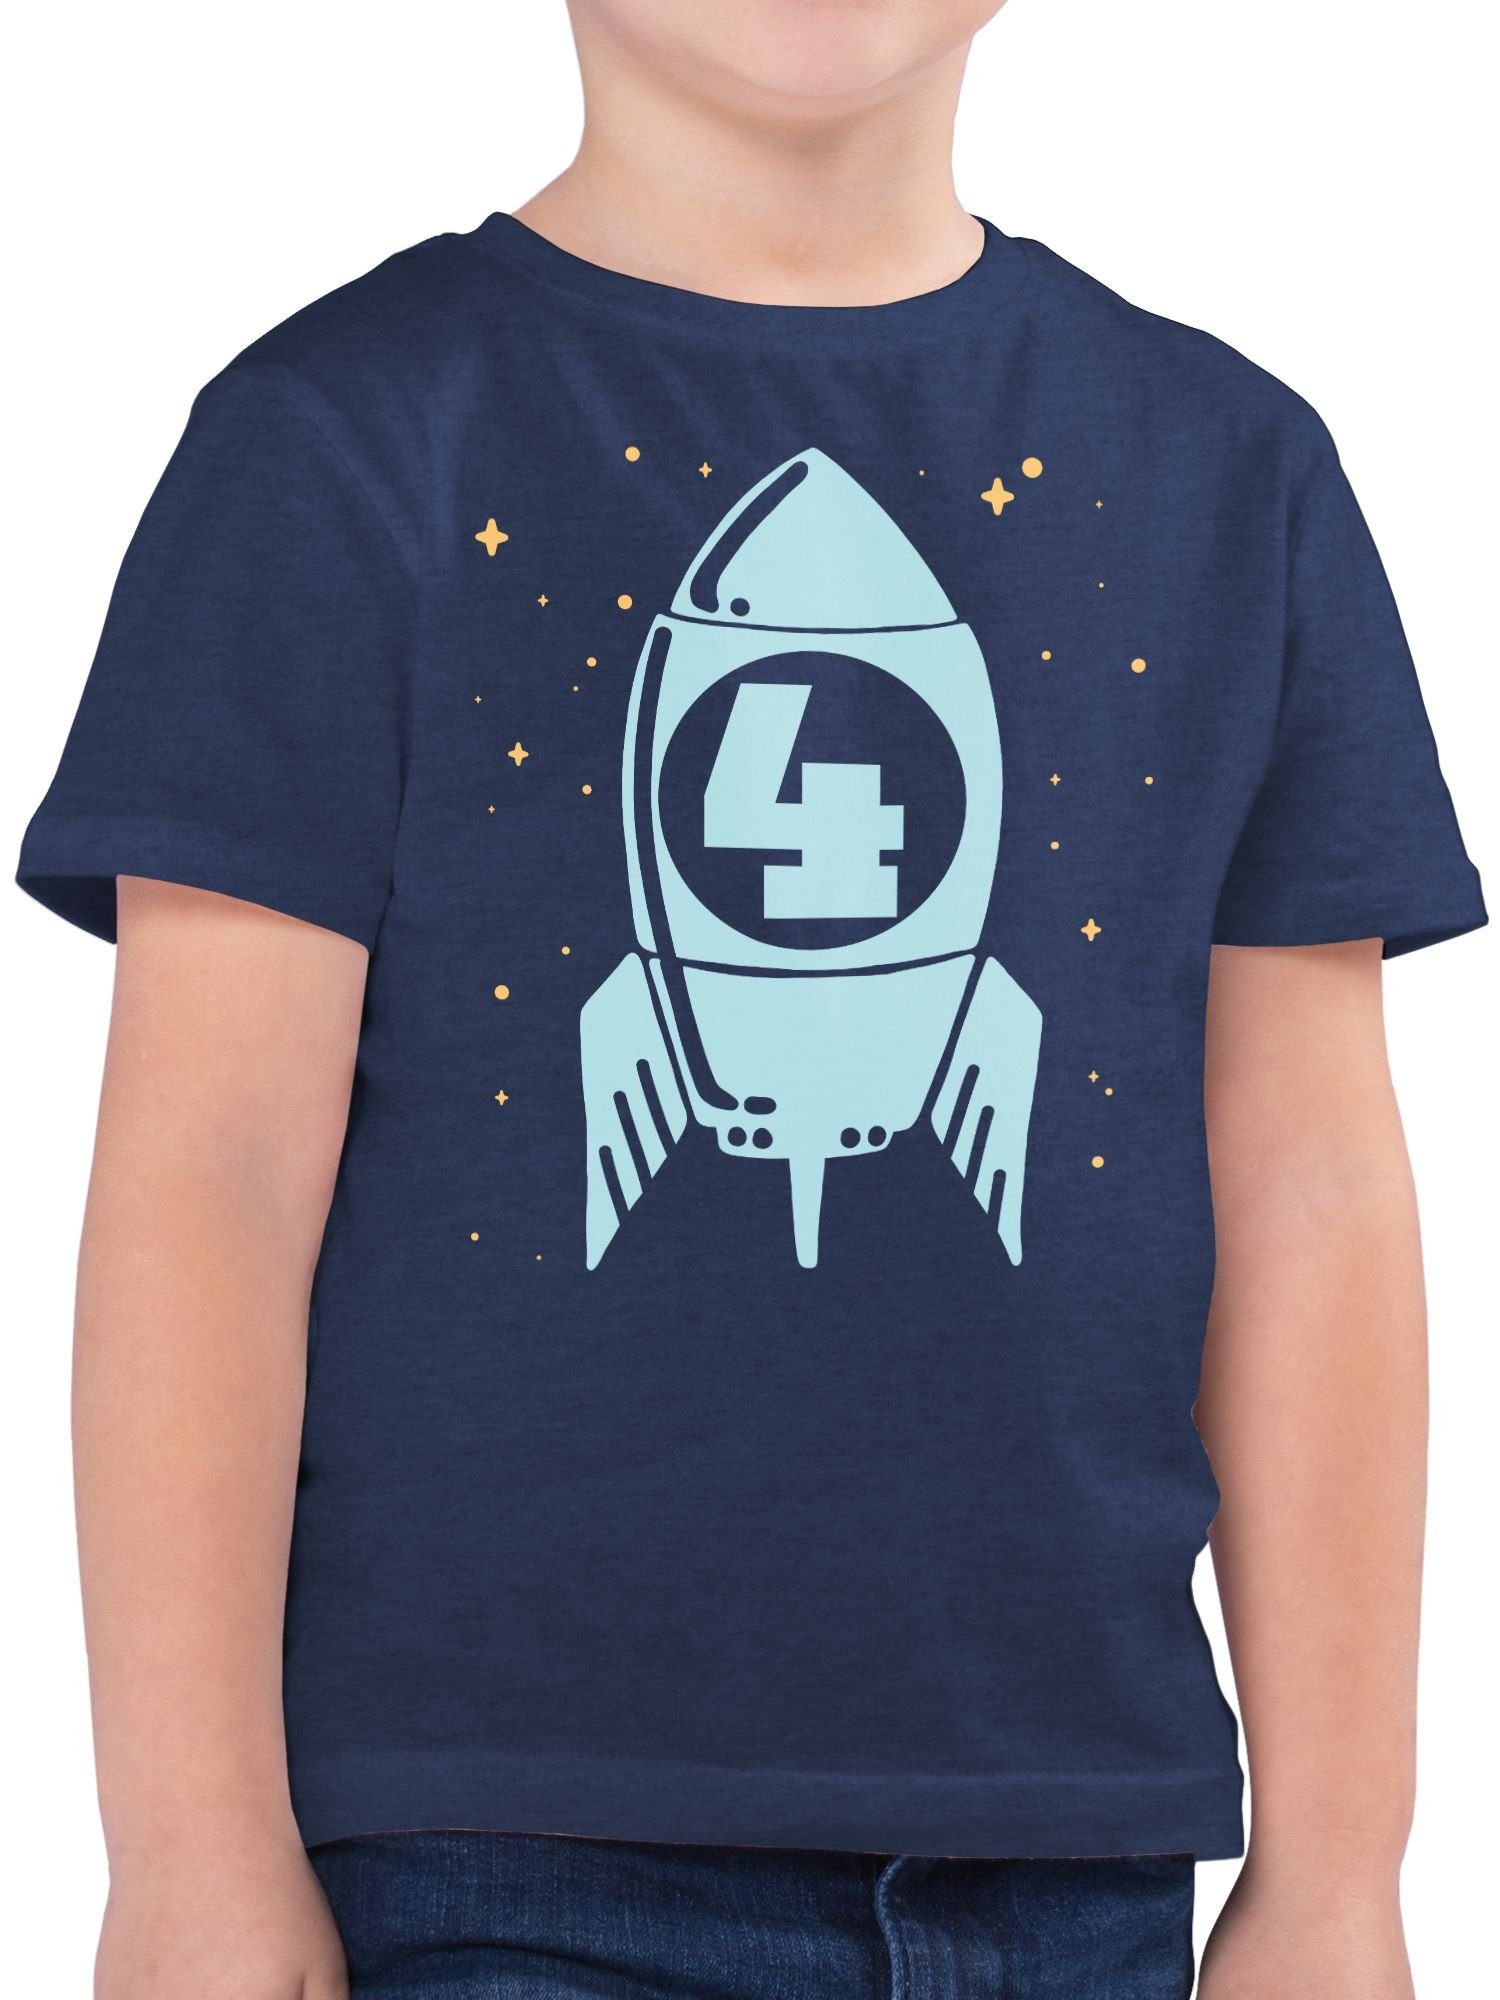 Shirtracer T-Shirt Rakete mit 1 Sternen Geburtstag 4. Vier Dunkelblau blau Meliert